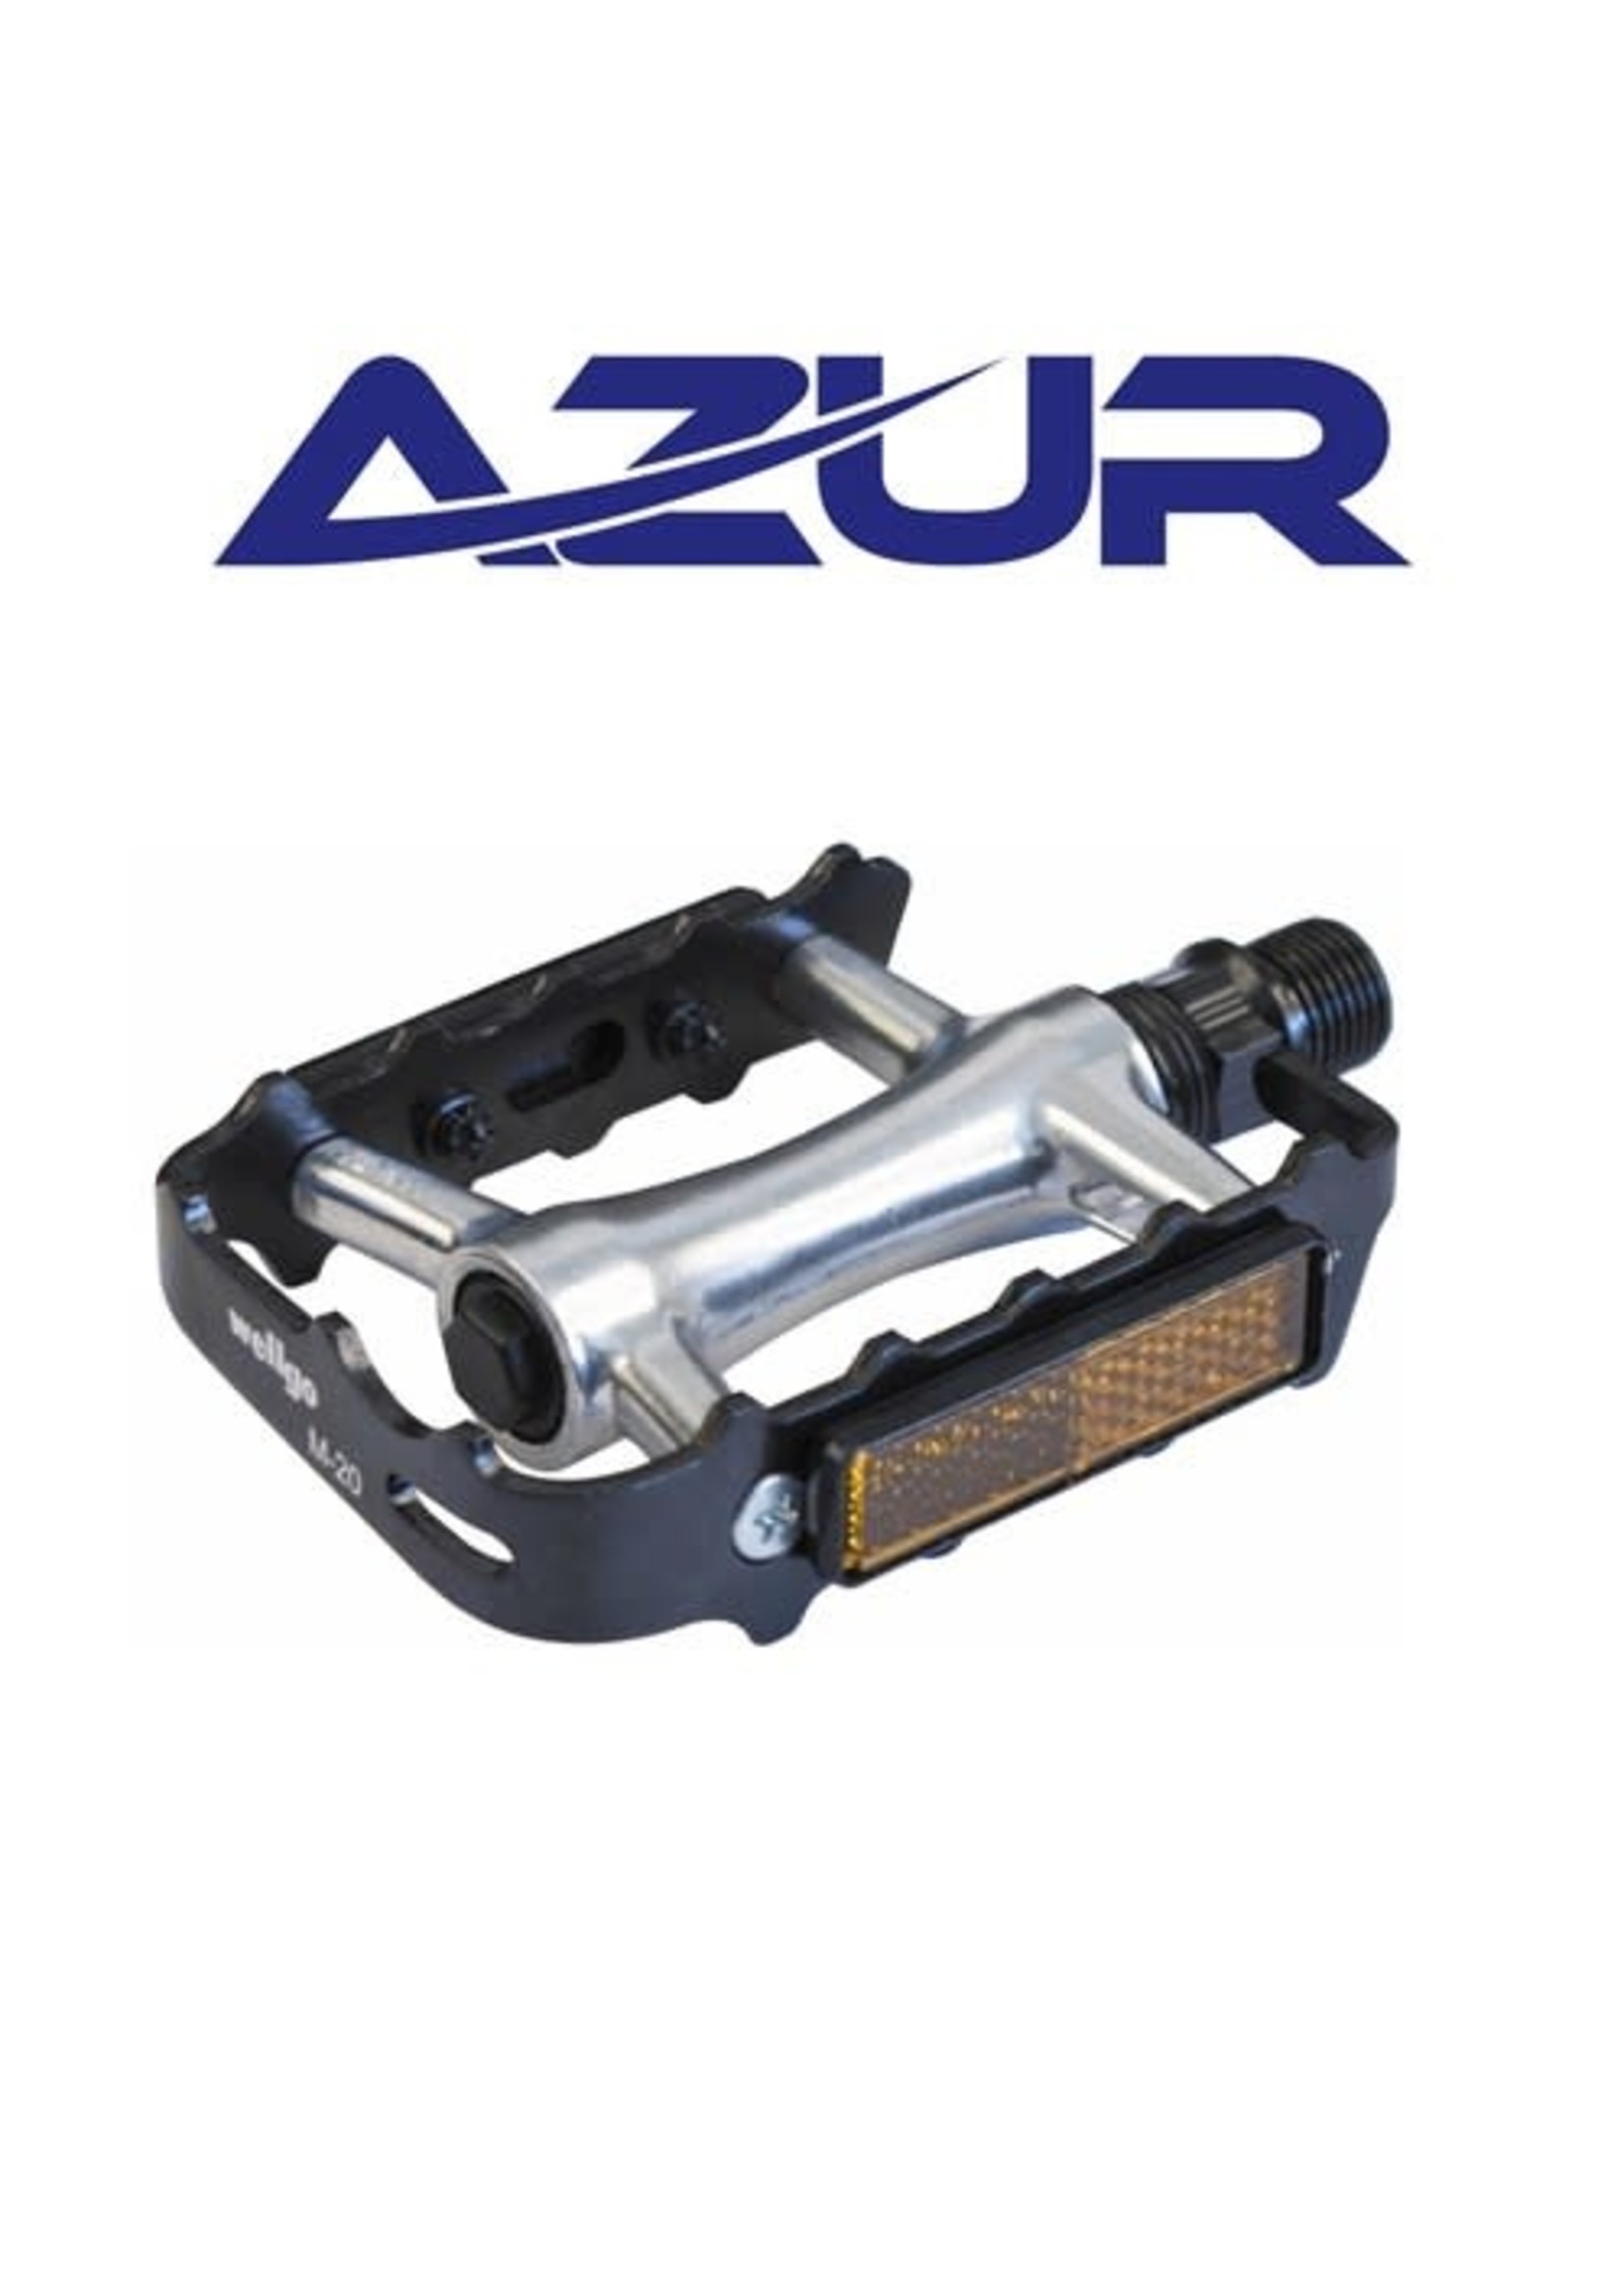 Azur Pedal M20 9/16" sealed bearing